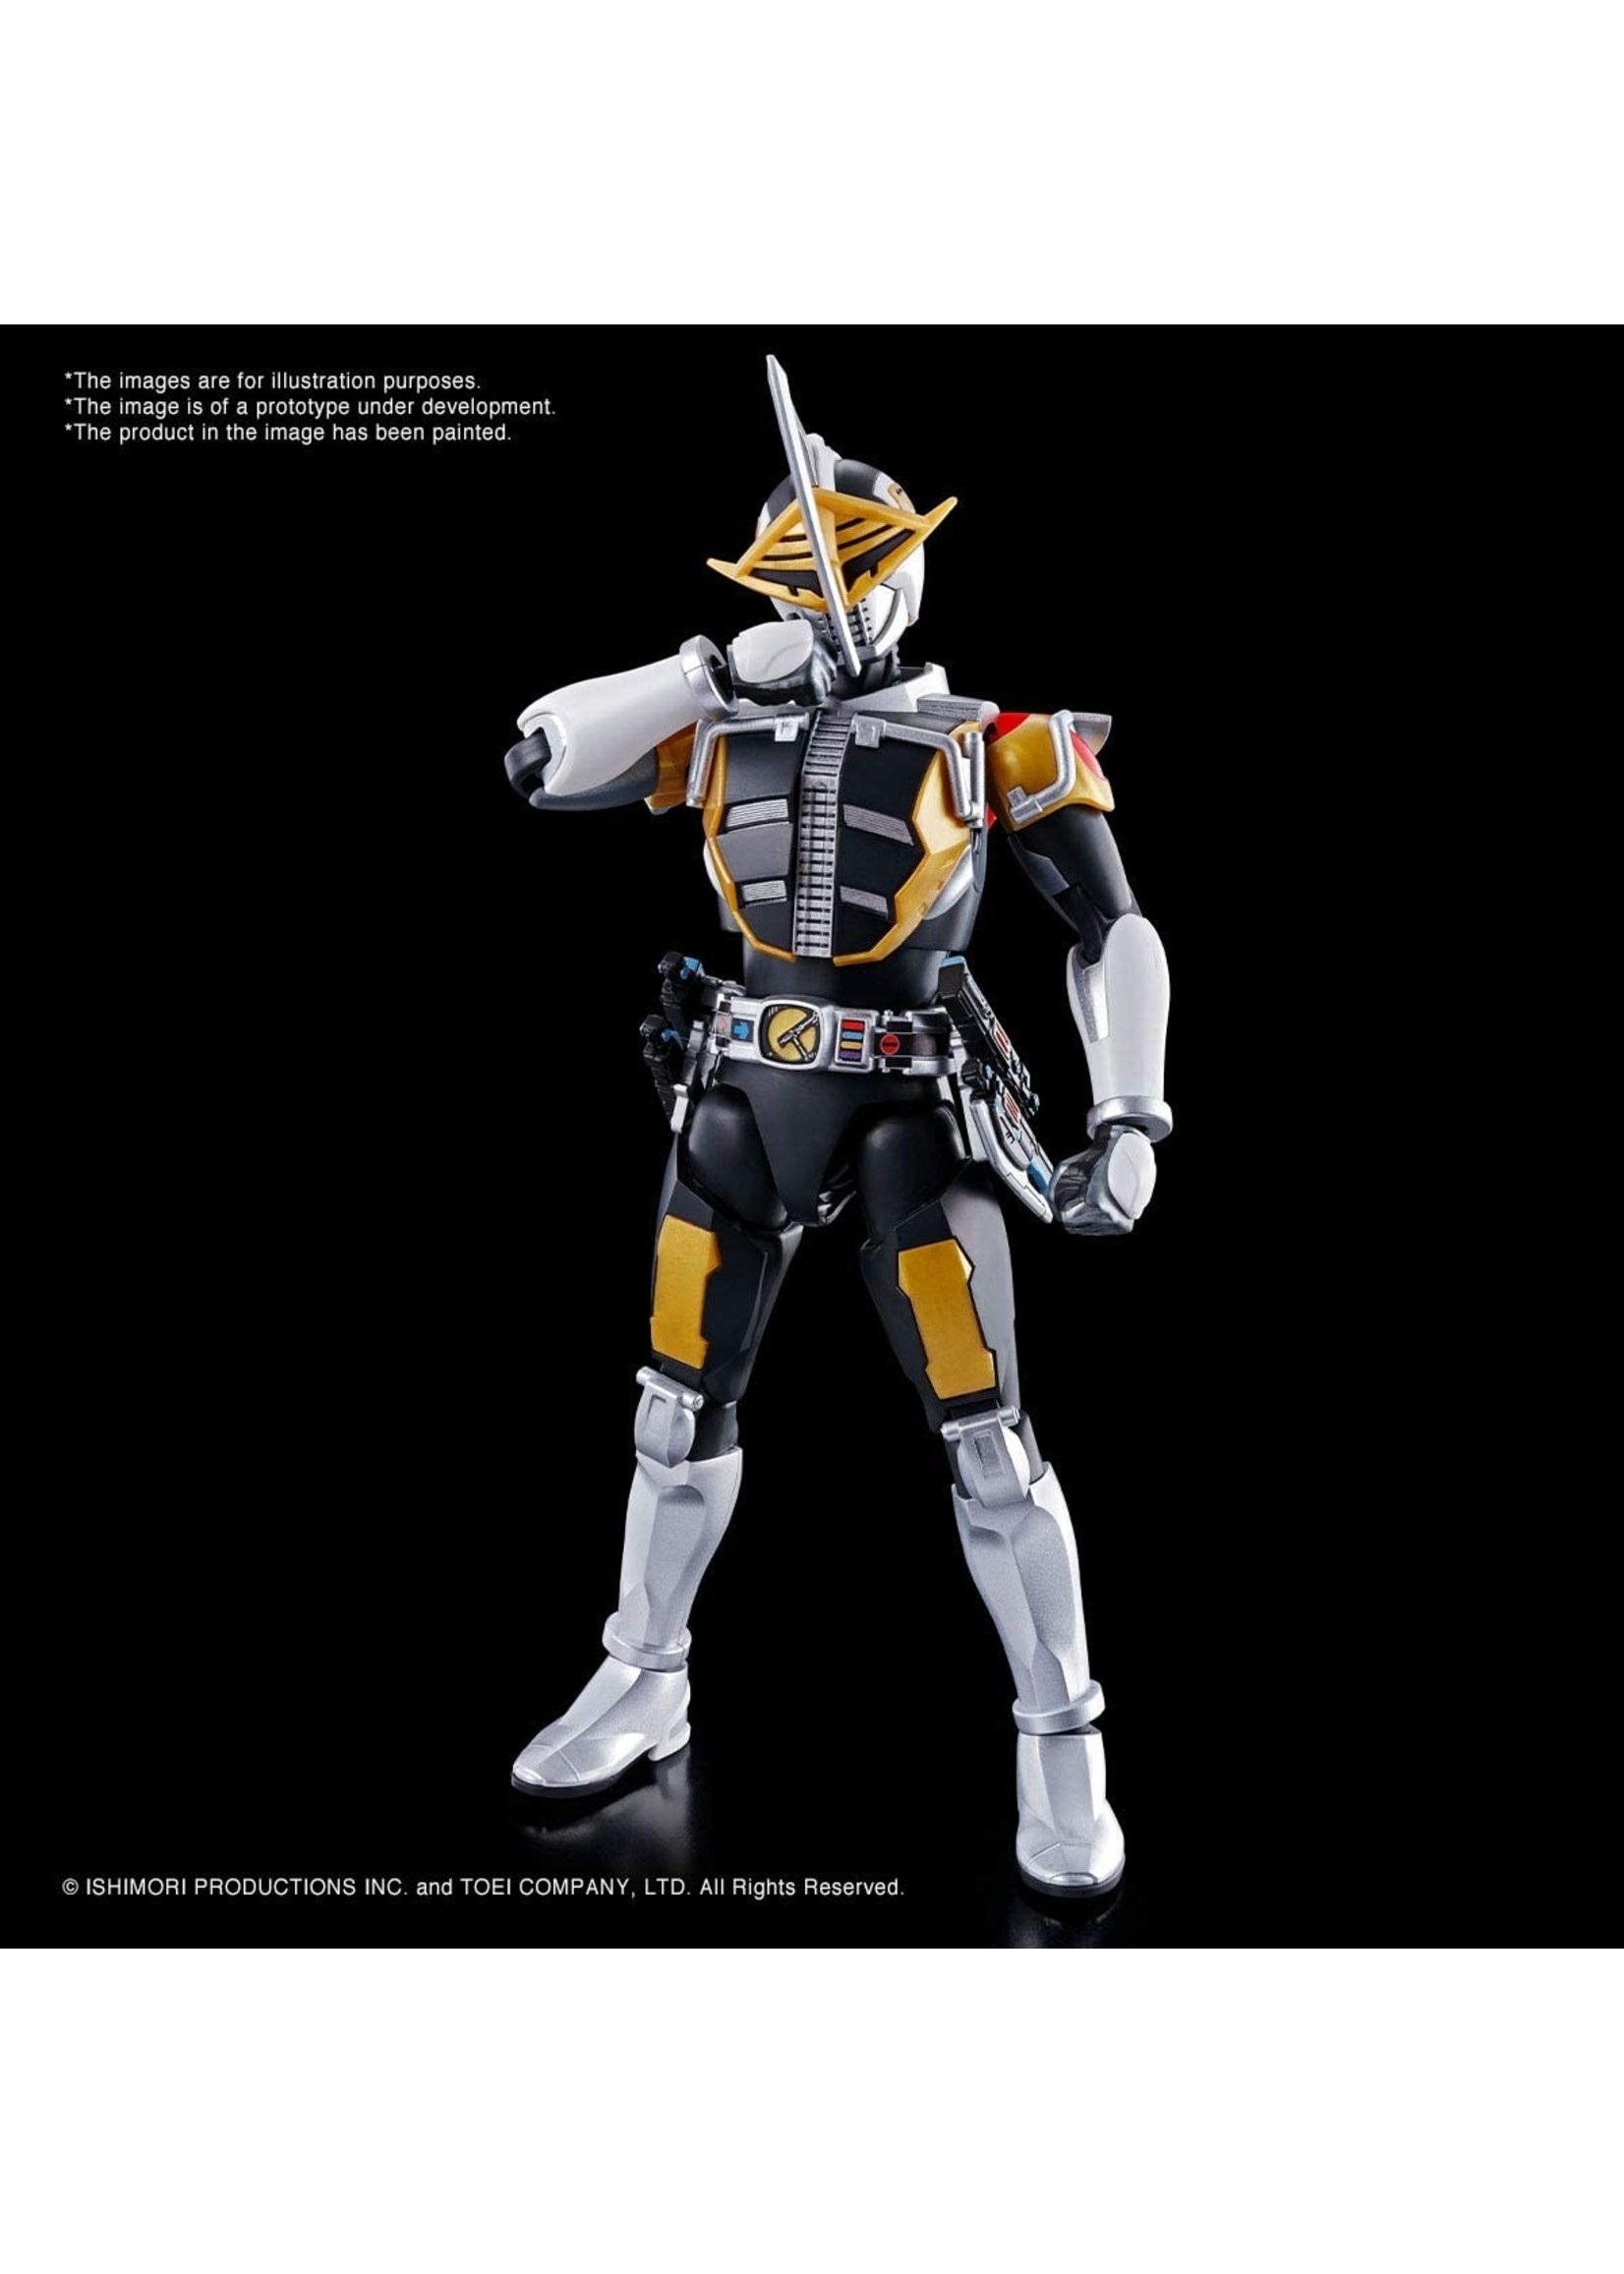 Bandai Masked Rider Den-O AX Form & Plat Form